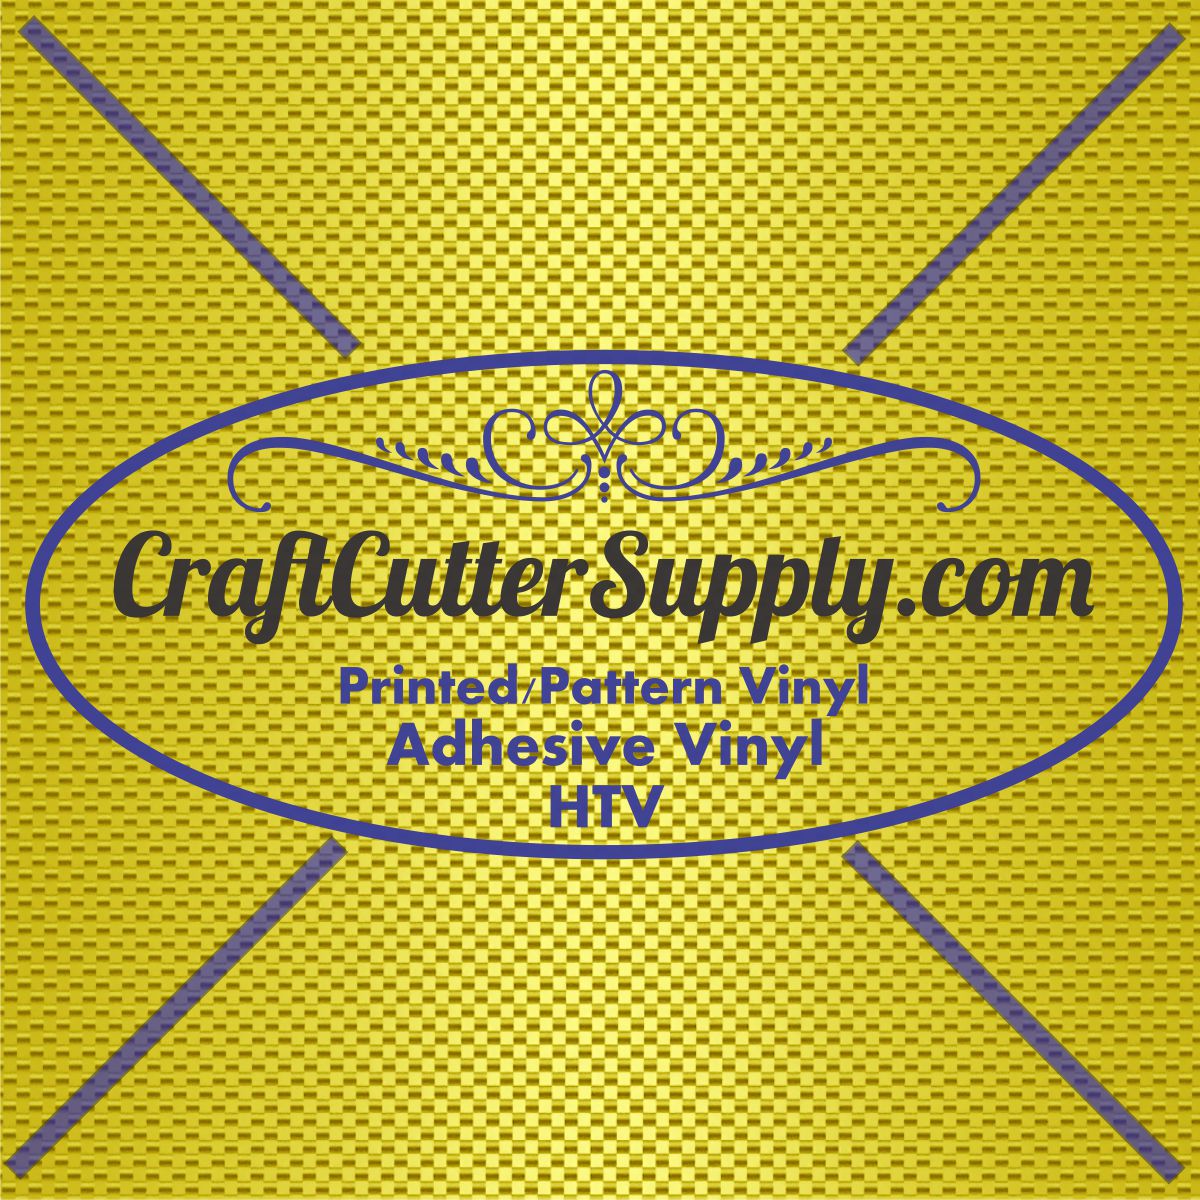 Gold Carbon Fiber 12x12 - CraftCutterSupply.com